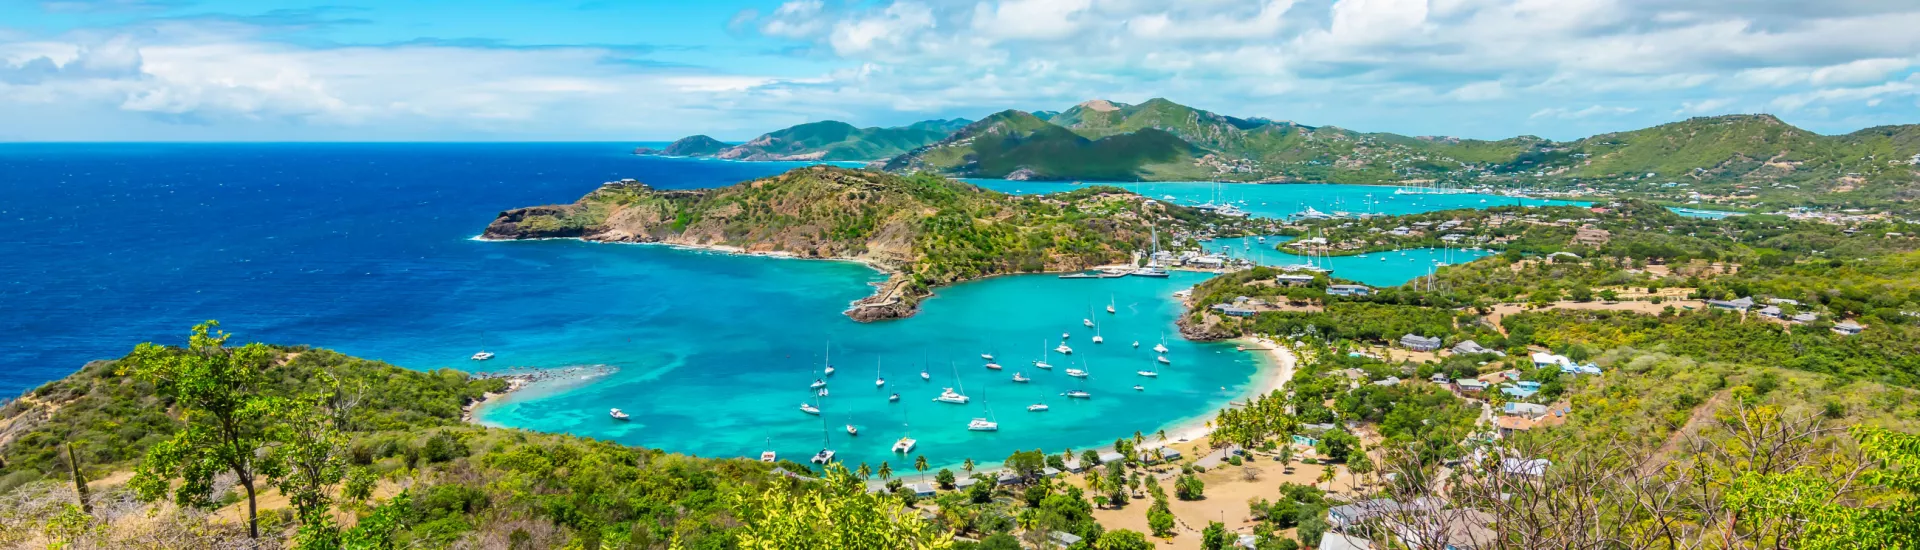 Panoramablick auf die malerische Landschaft von Shirley Heights in Antigua und Barbuda